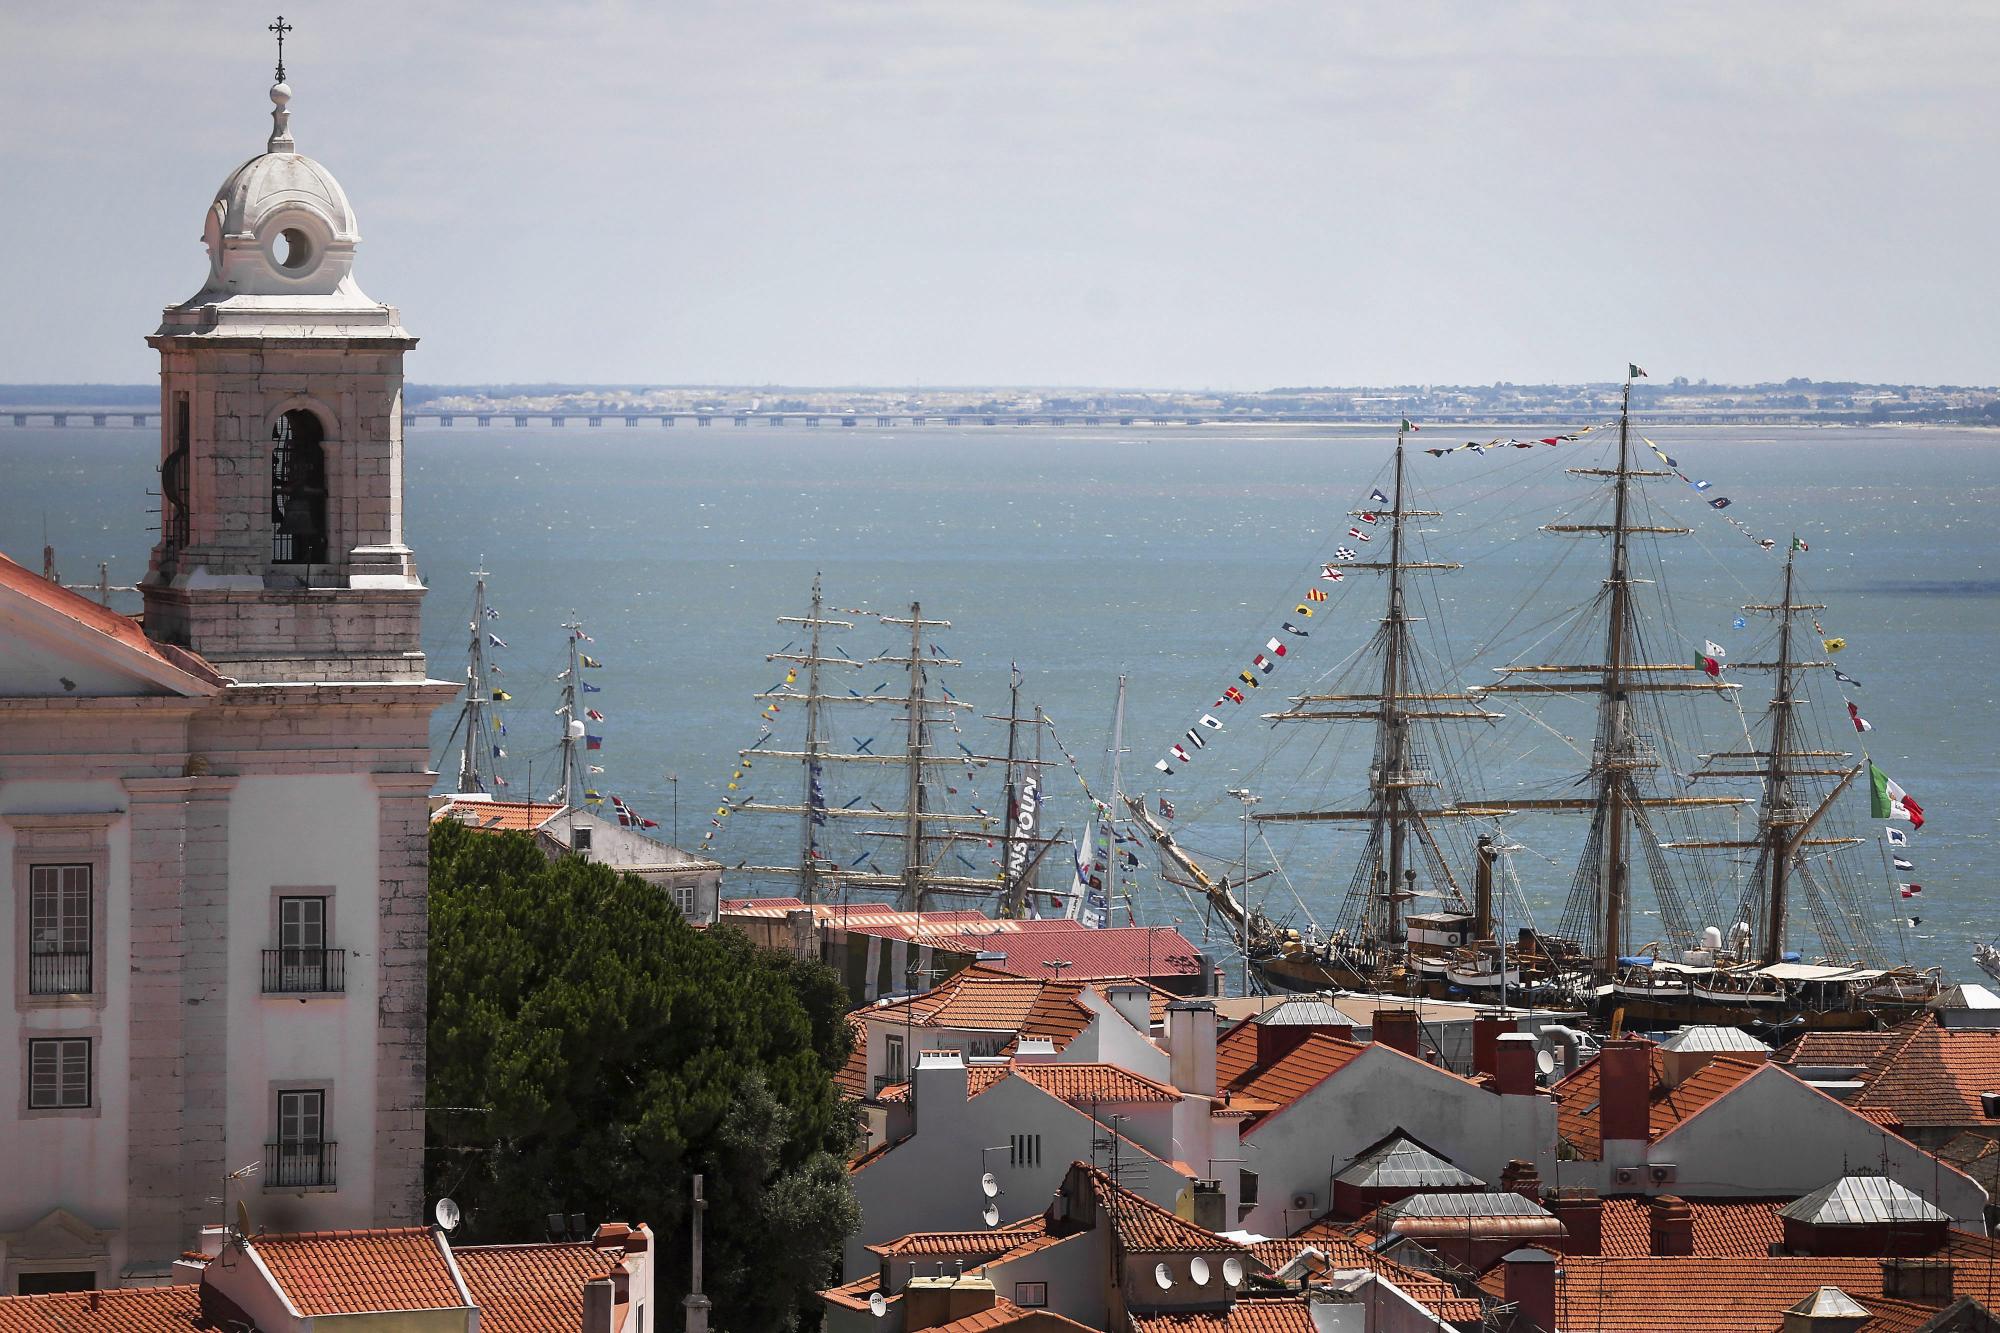 Regata de barcos de vela en Portugal